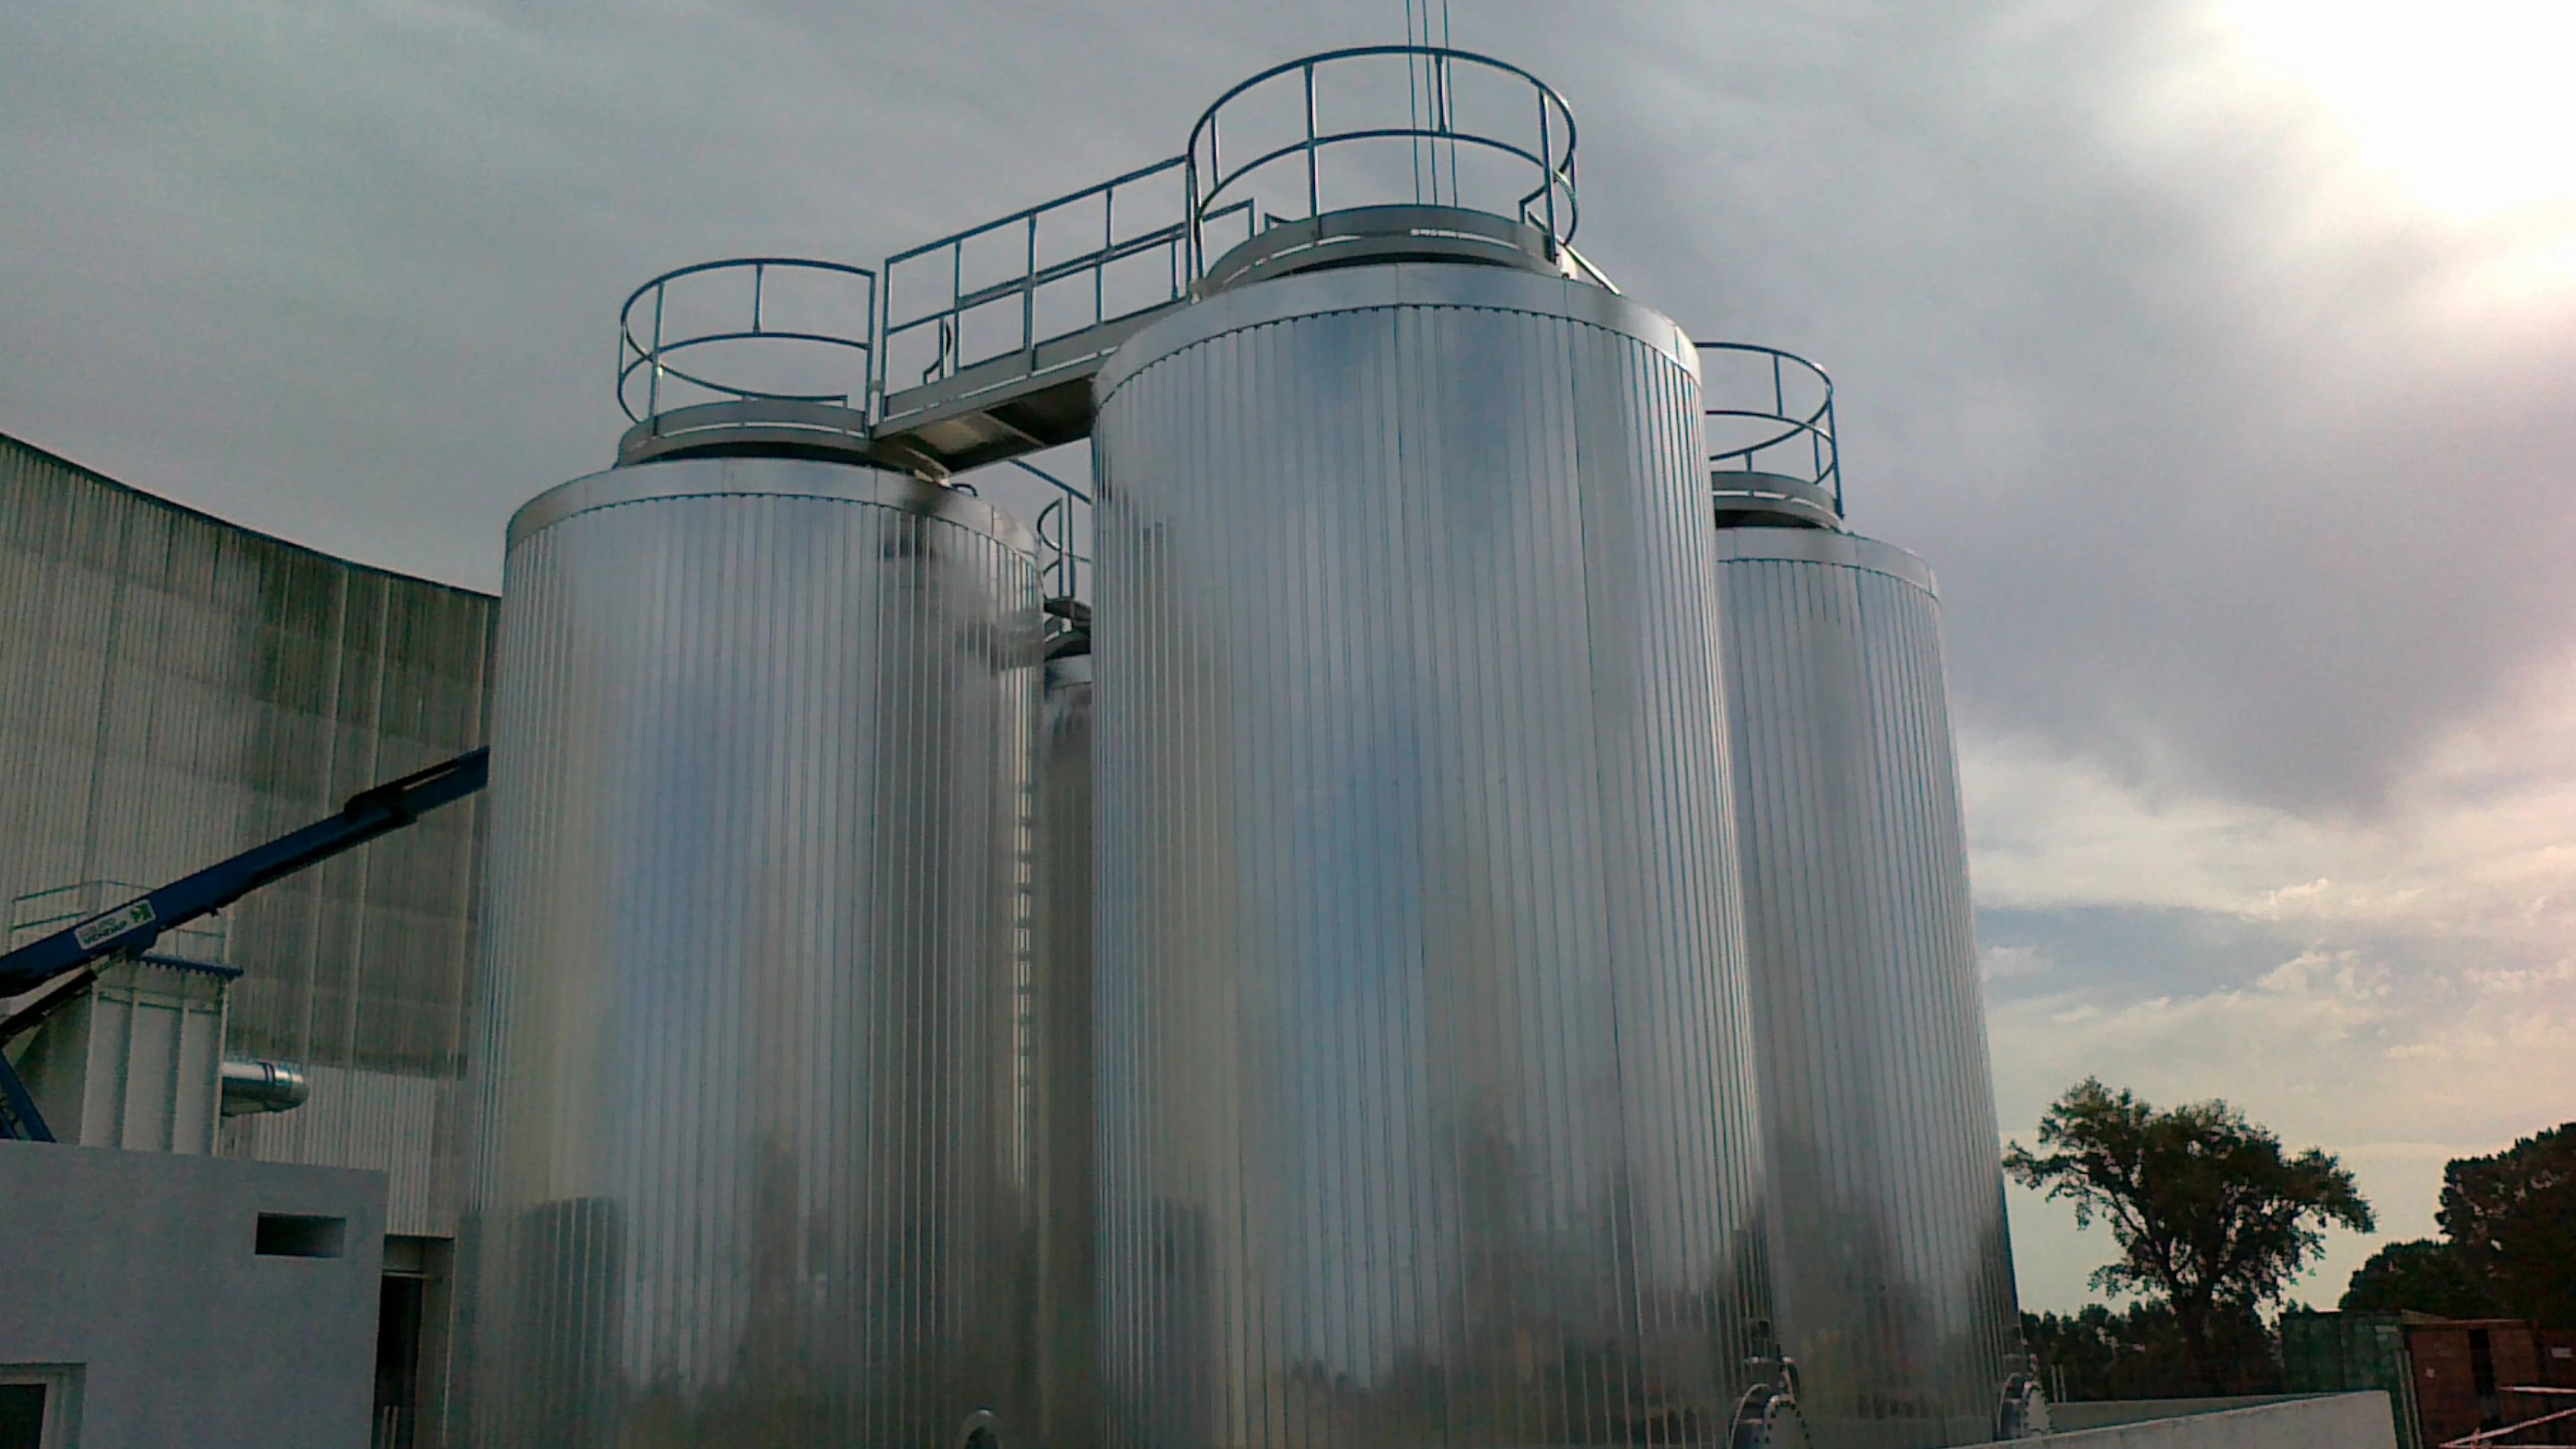 BTL Storage tanks in stainless steel - Chemical Industry (Mining)